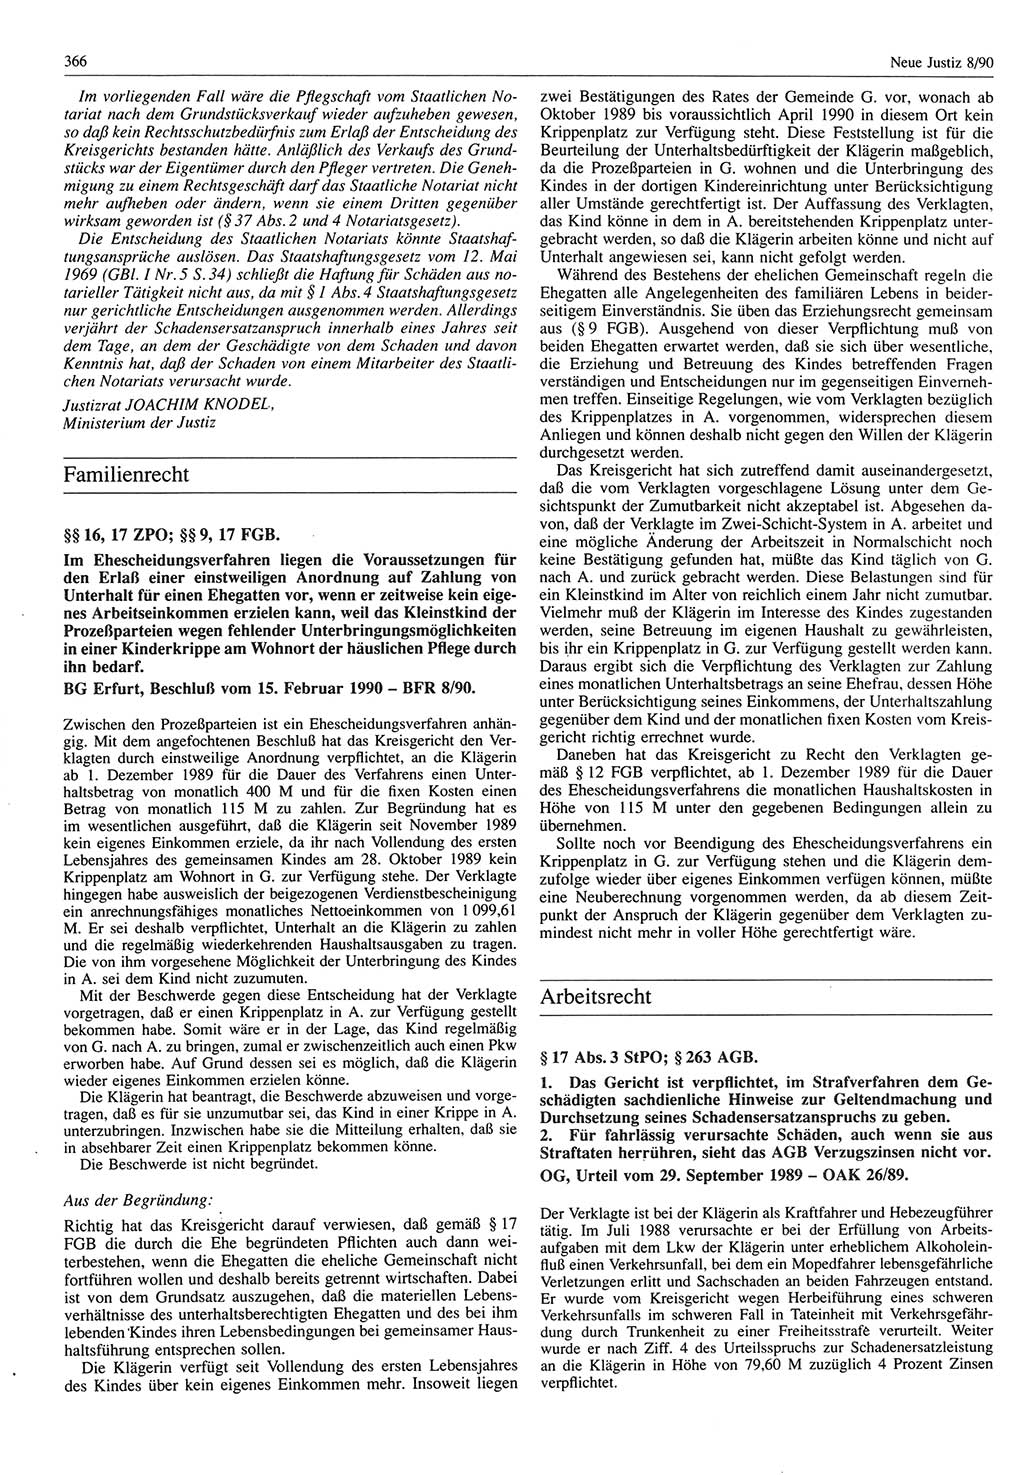 Neue Justiz (NJ), Zeitschrift für Rechtsetzung und Rechtsanwendung [Deutsche Demokratische Republik (DDR)], 44. Jahrgang 1990, Seite 366 (NJ DDR 1990, S. 366)